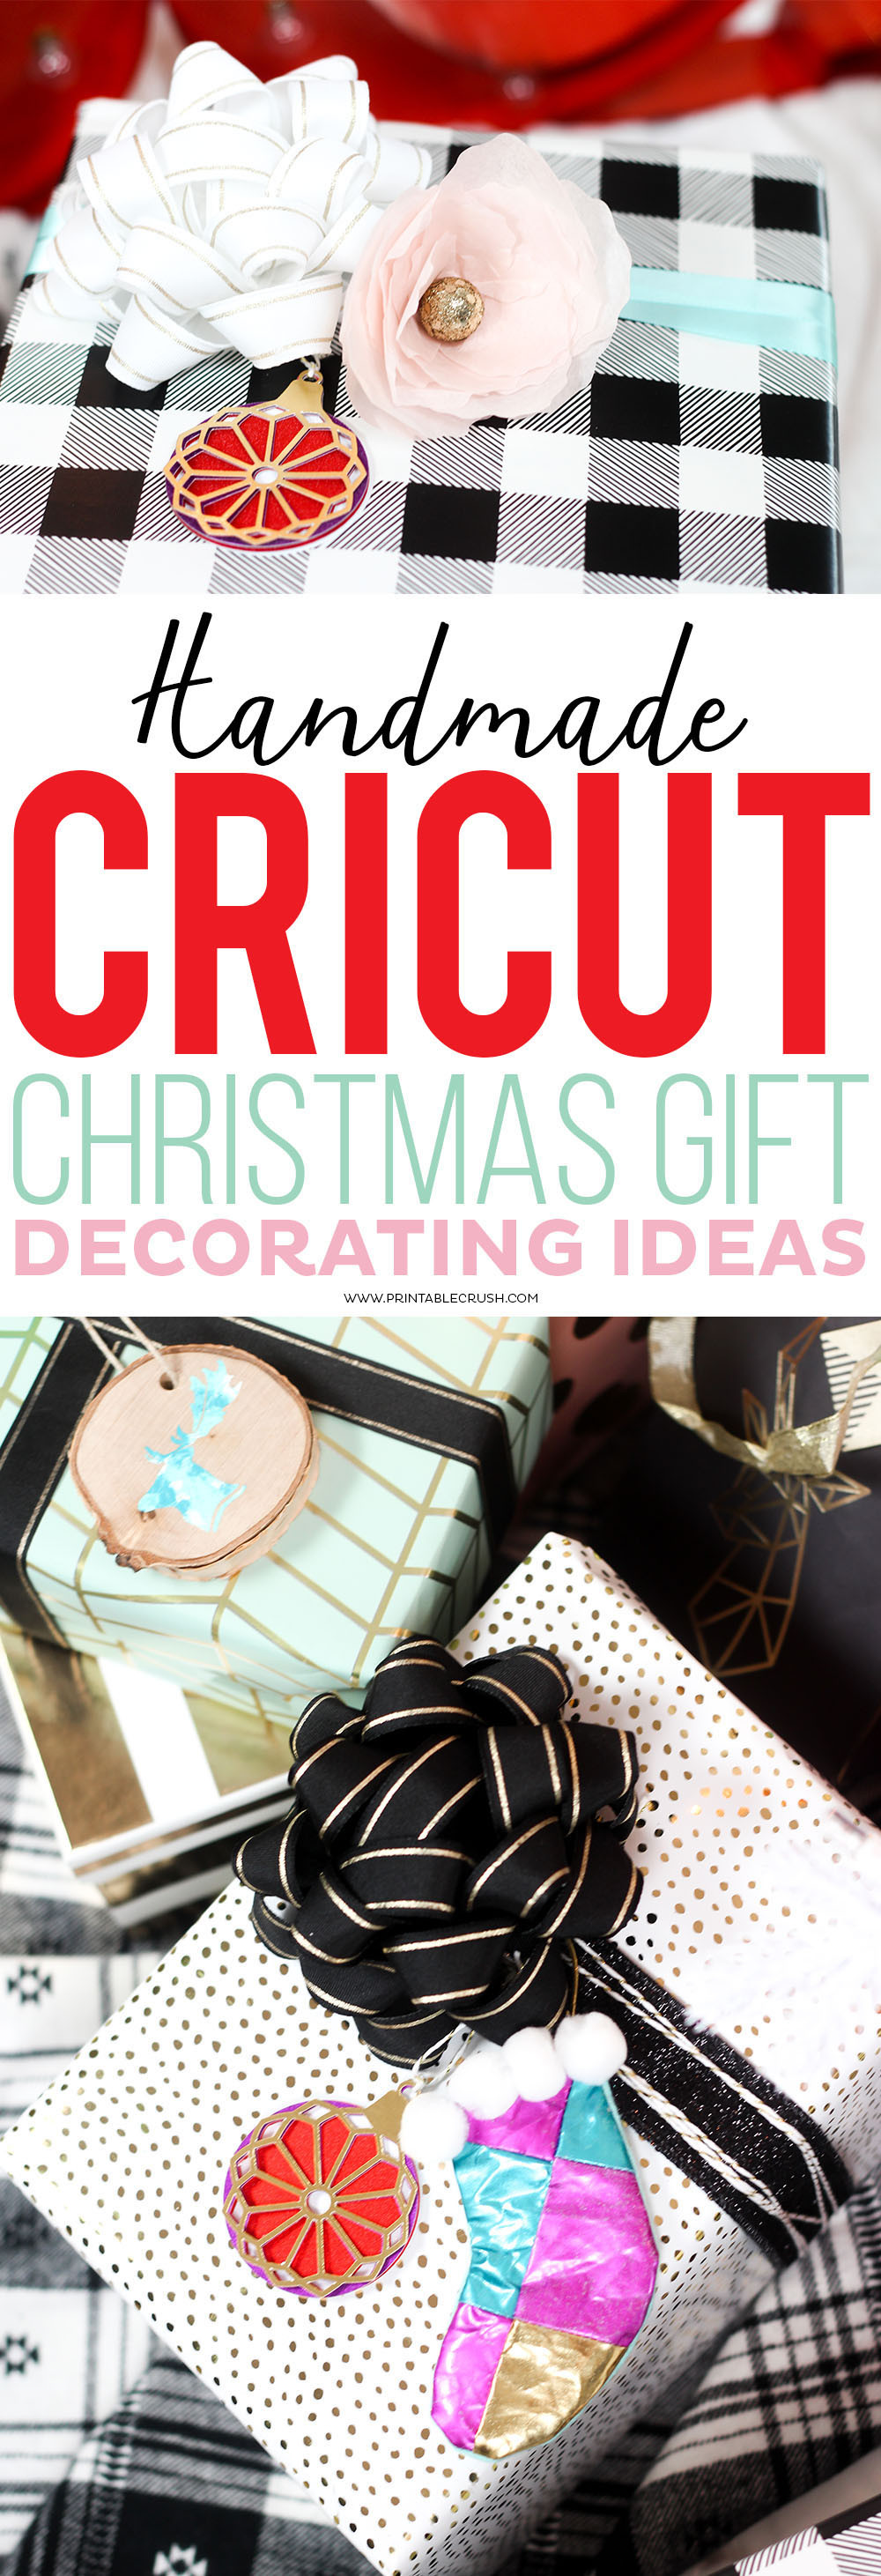 Cricut Christmas Gift Ideas
 Handmade Cricut Christmas Gift Decorating Ideas